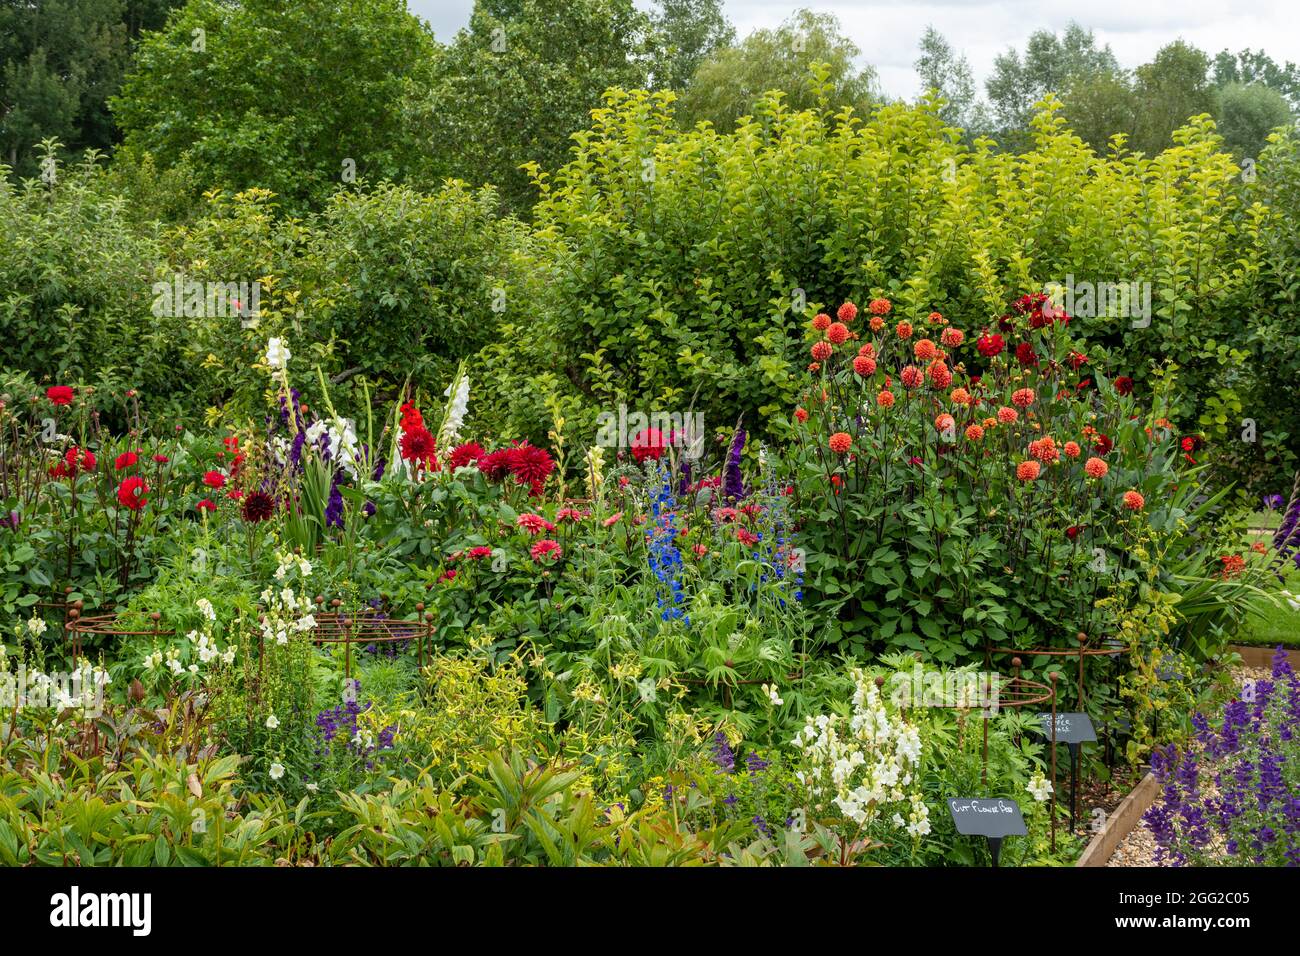 Houghton Lodge Gardens in Hampshire, Inghilterra, Regno Unito, durante agosto o estate. Il giardino dei fiori recisi con fiori colorati, parte dei giardini murati. Foto Stock